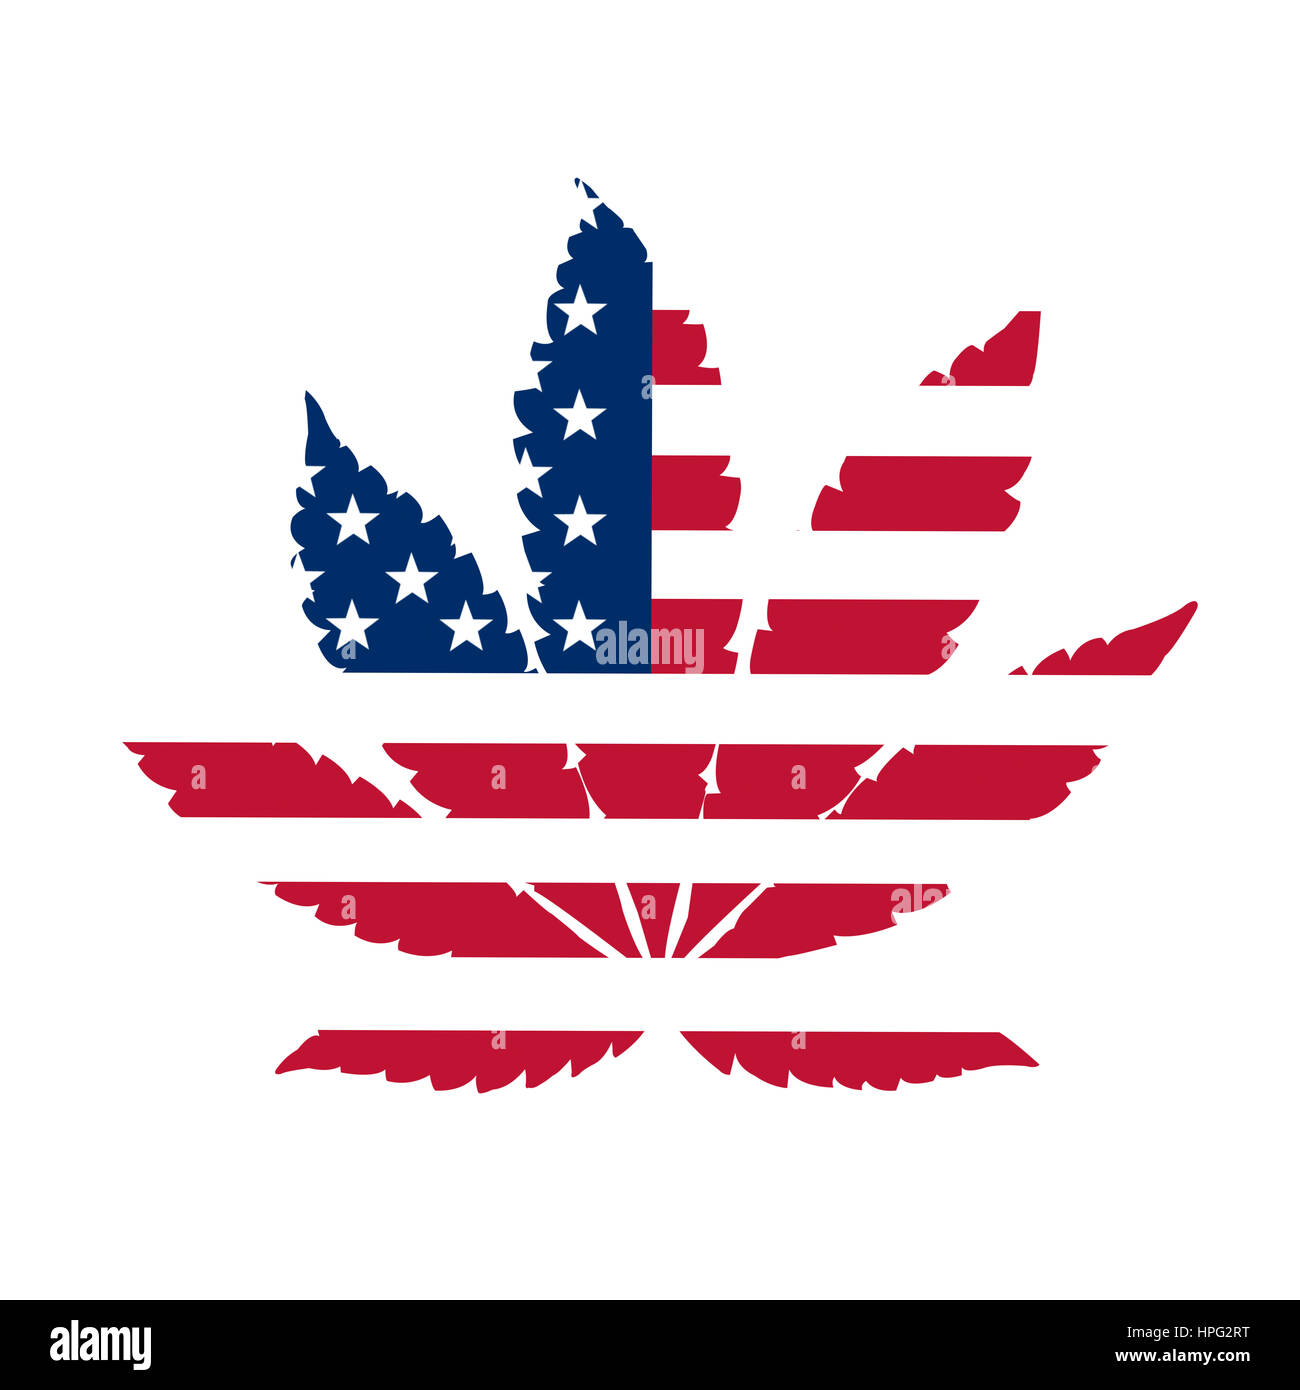 Flagge der Vereinigten Staaten mit Marihuana verlässt statt Sterne Stockfoto